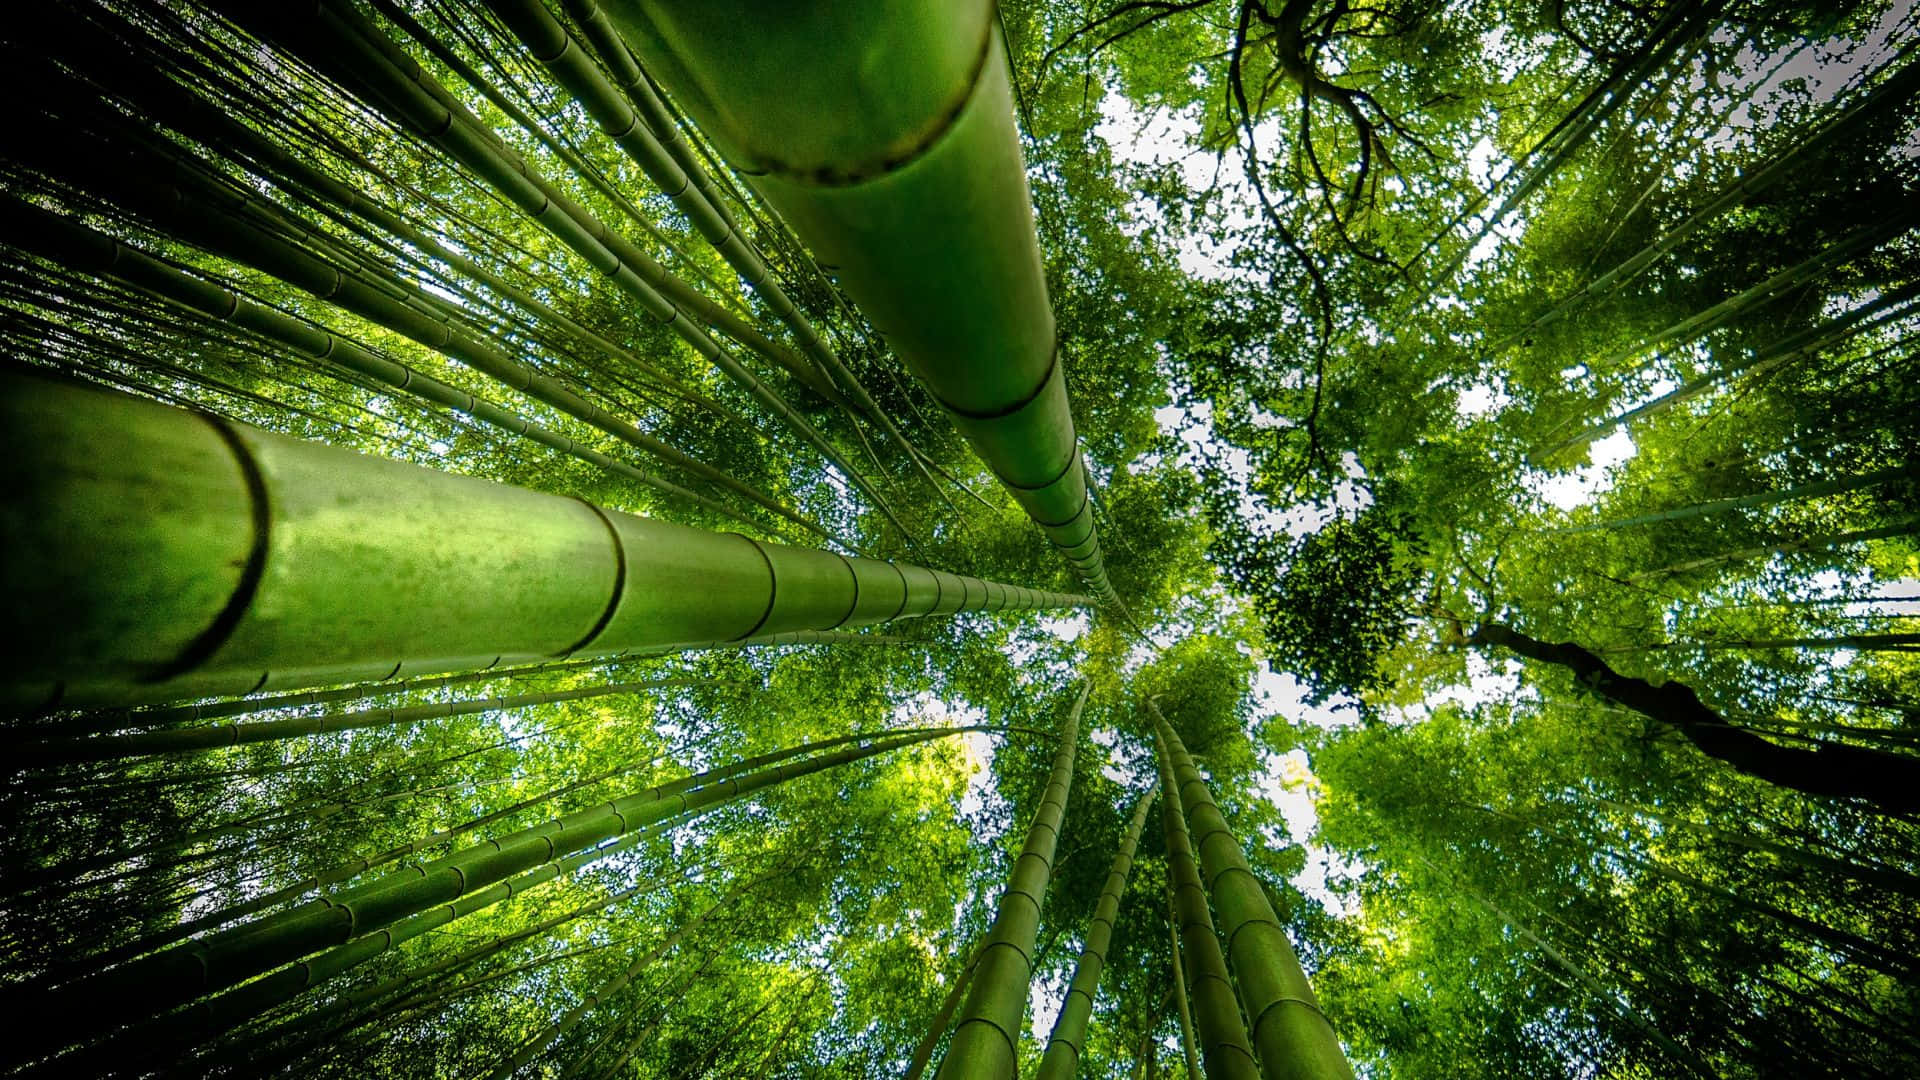 Tag en gåtur gennem denne fortryllede bambusskov Wallpaper